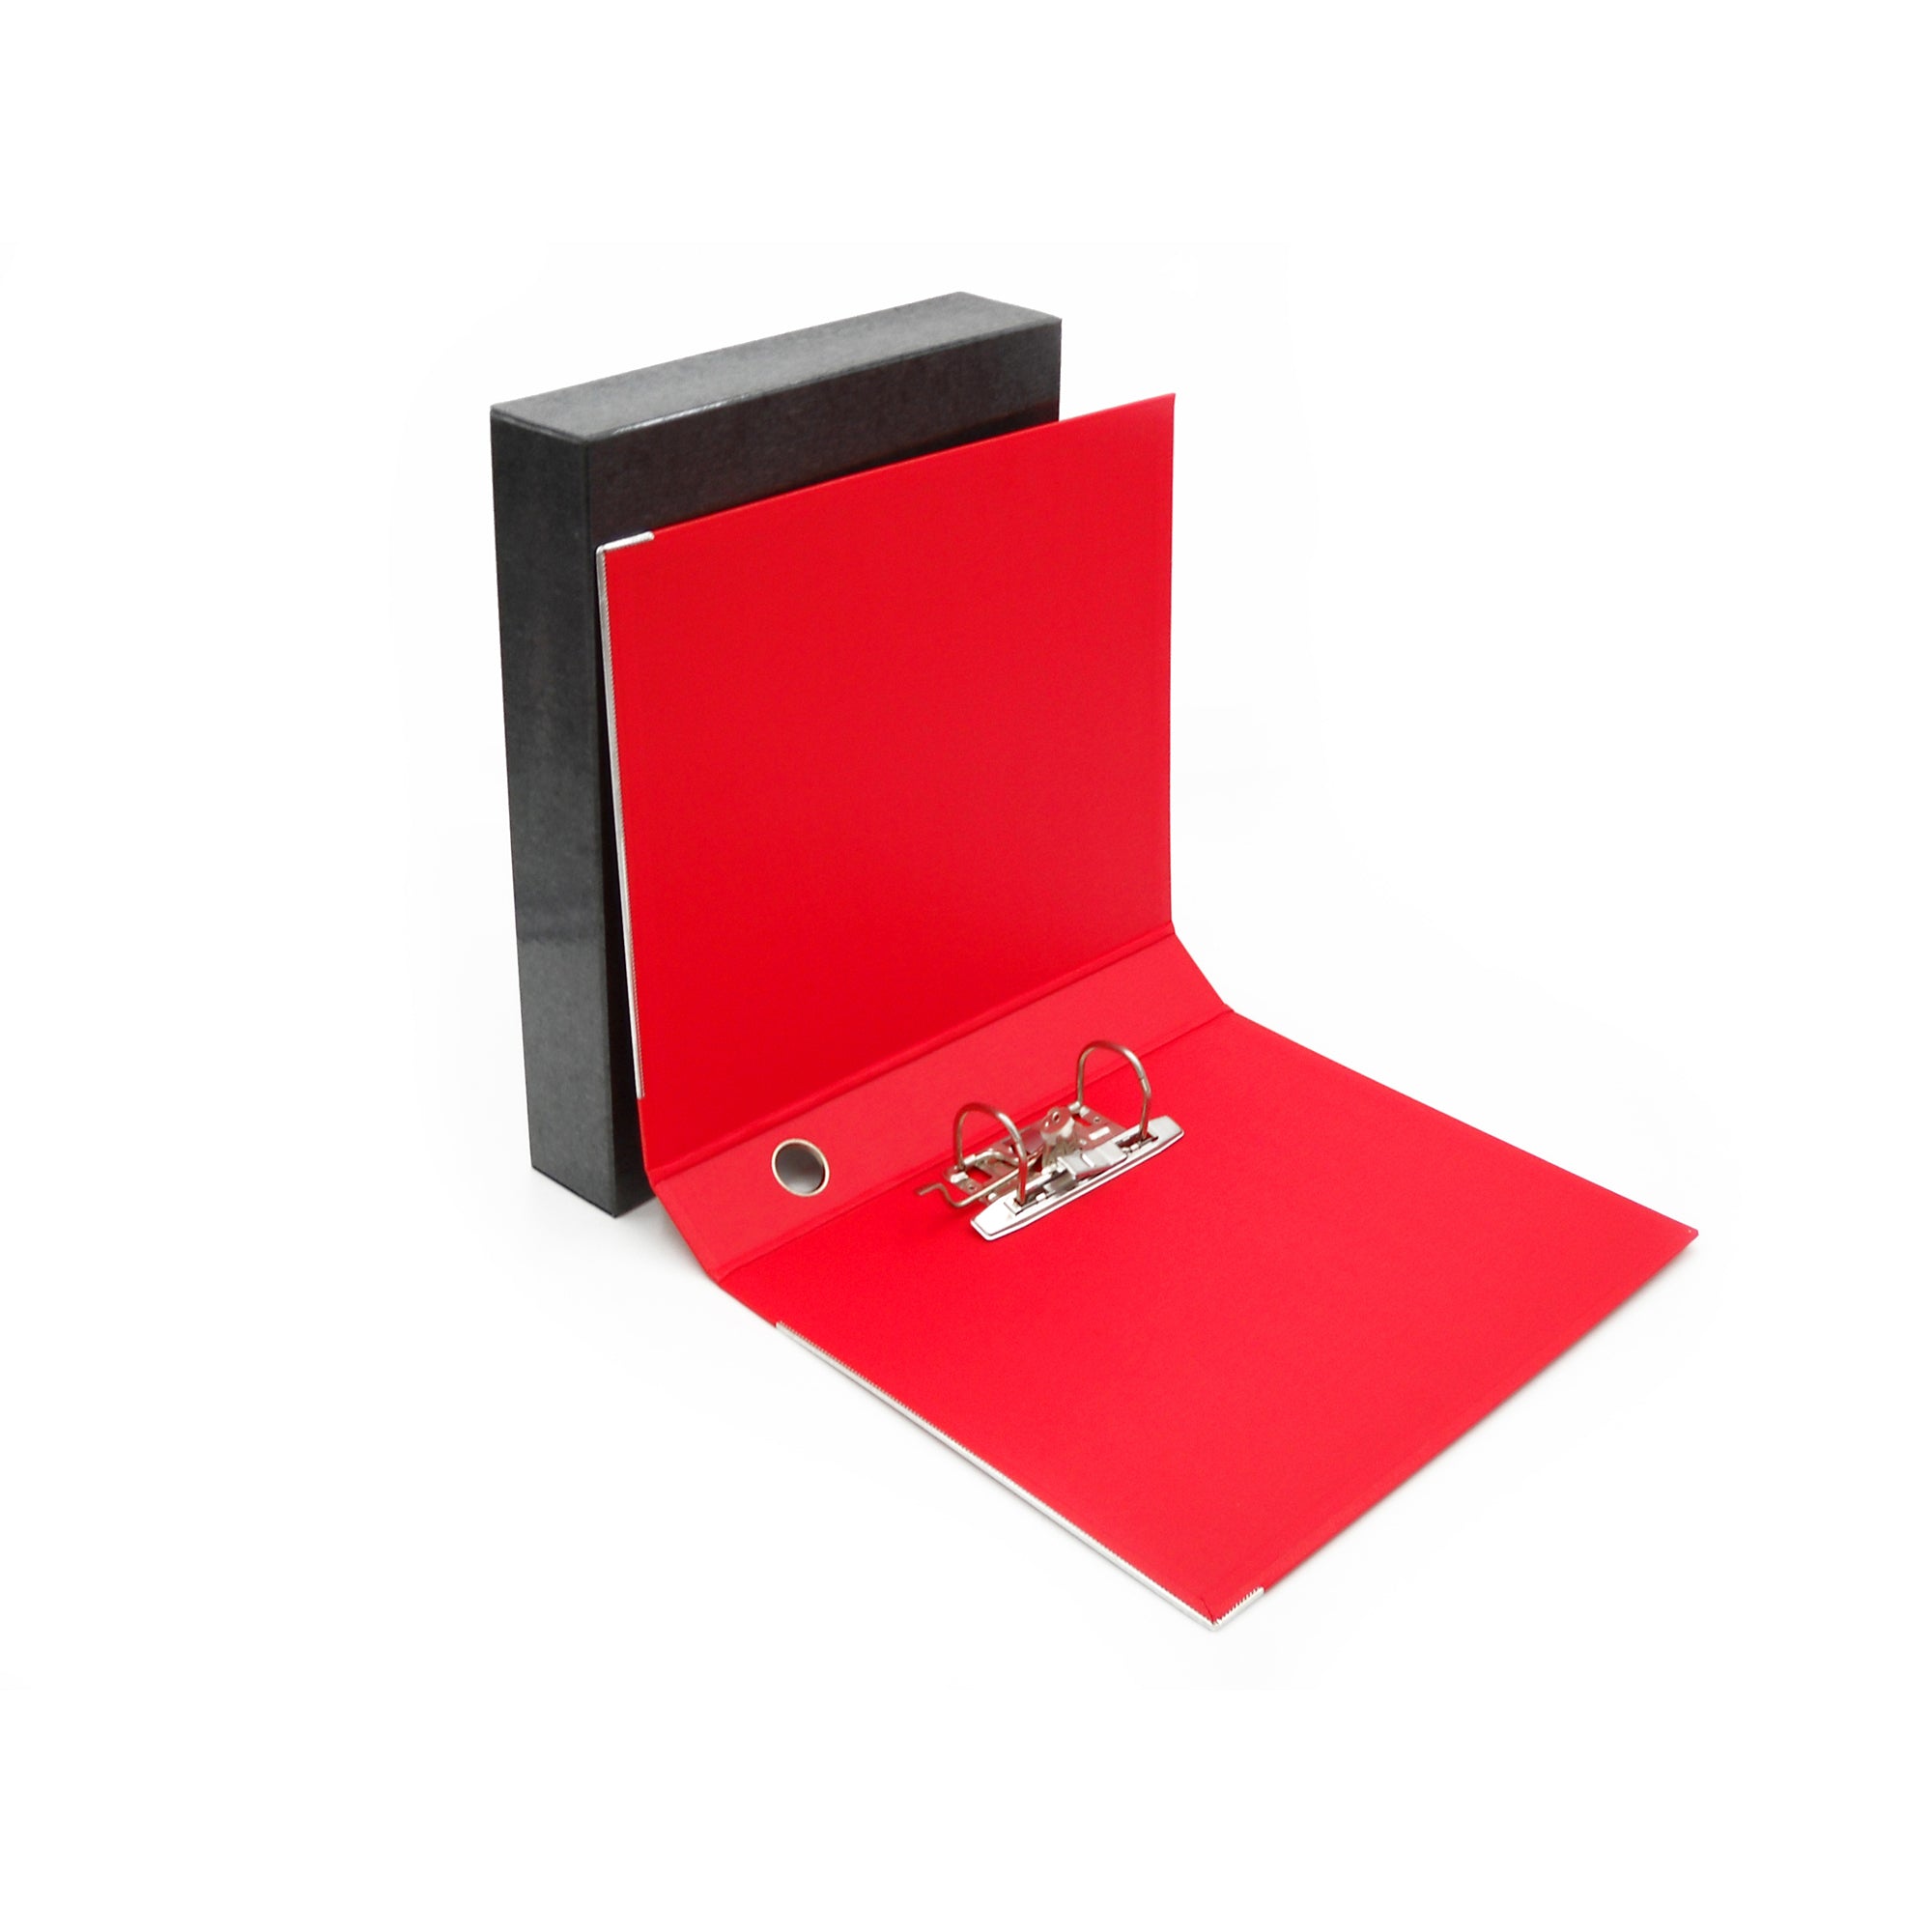 starline-registratore-kingbox-f-to-protocollo-dorso-5cm-rosso